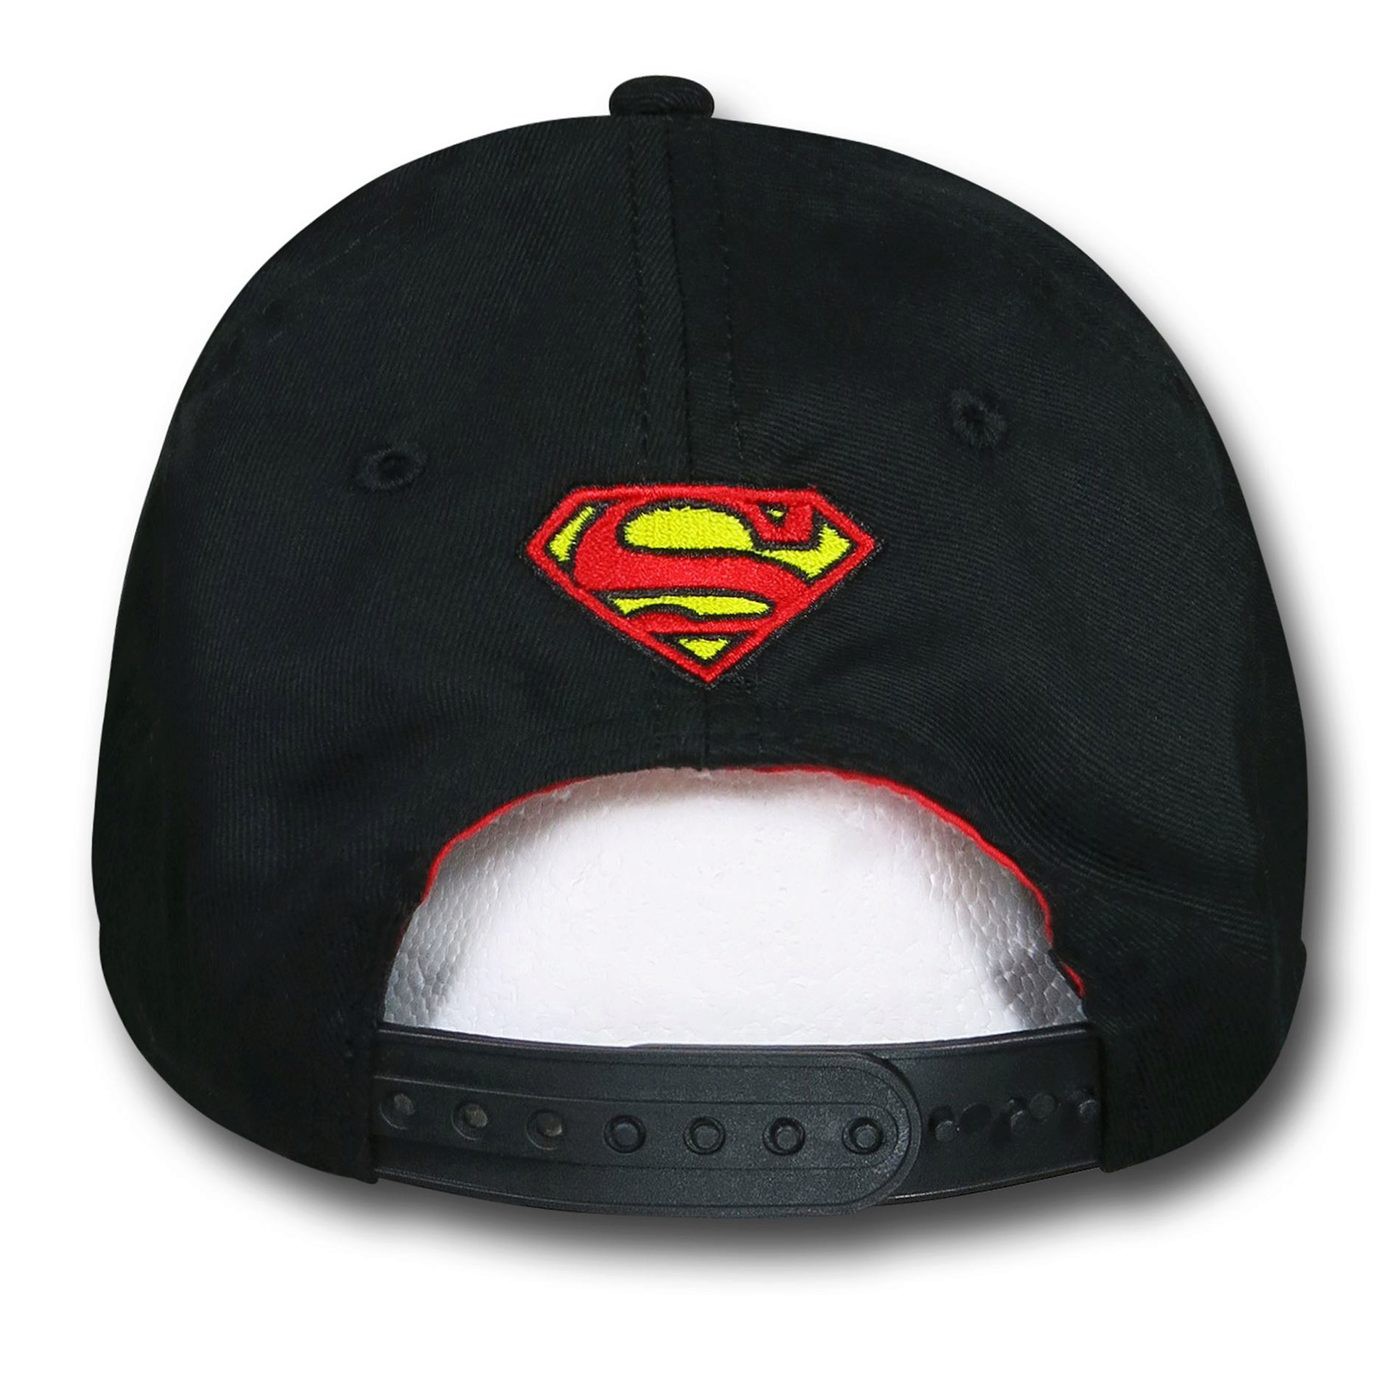 Superman Urban Sublimation Kids Cap